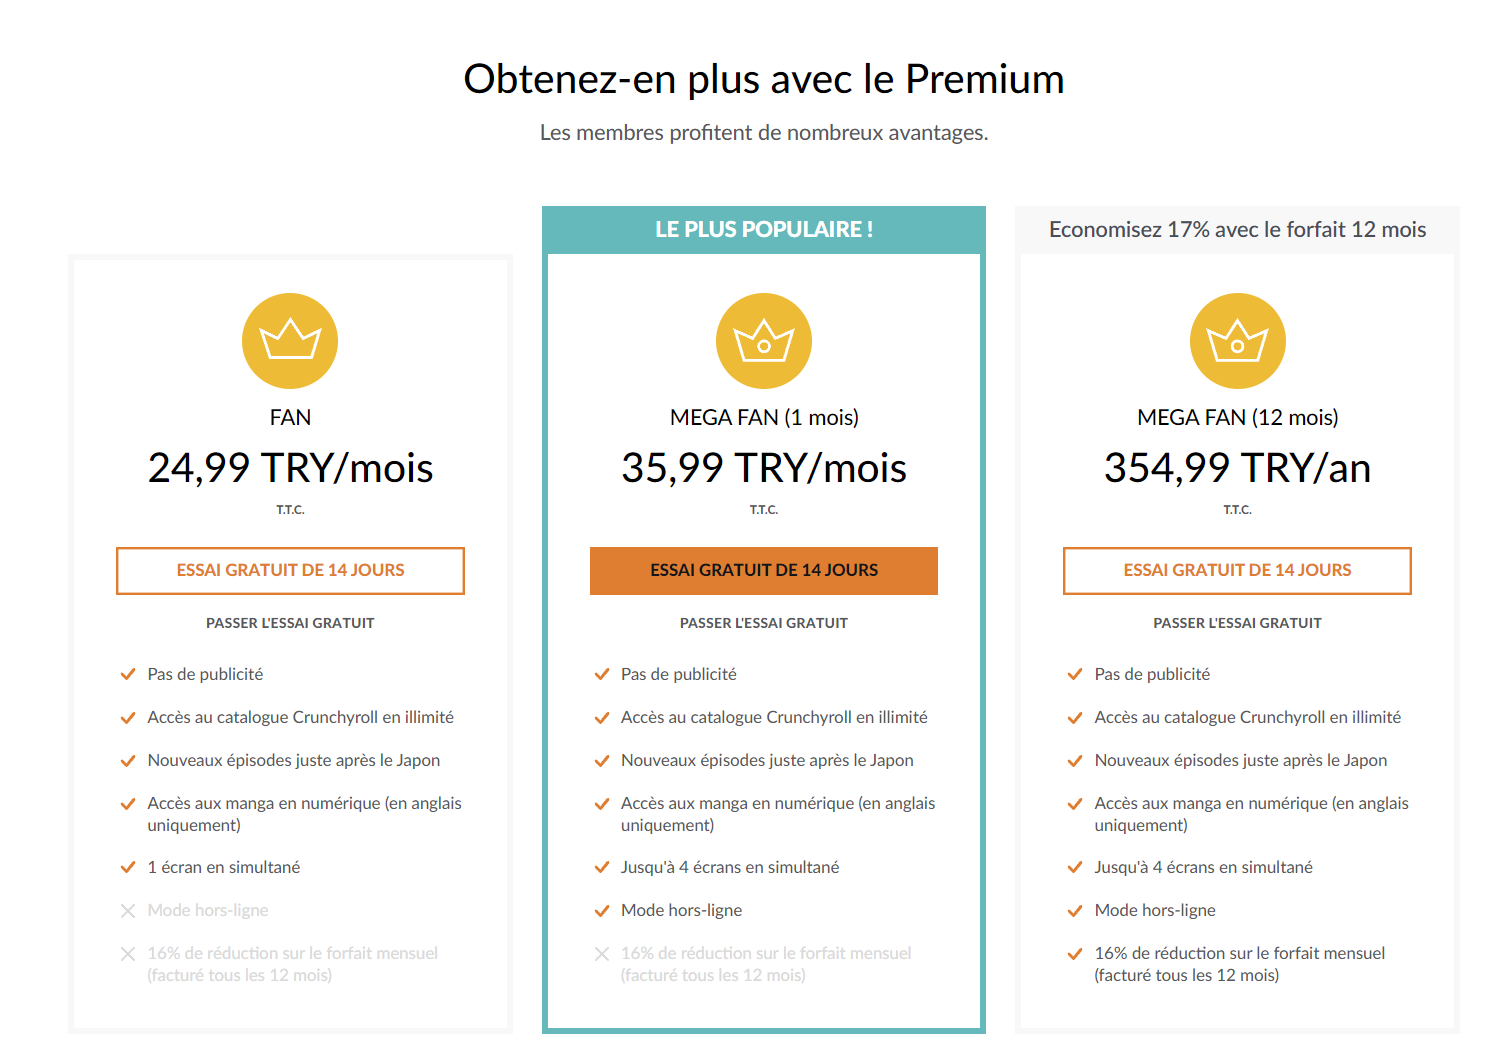 En Turquie, Crunchyroll coûte 35,99 TRY/mois, soit 1,78€/mois. Et même 1,24€/mois pour l'abonnement FAN !